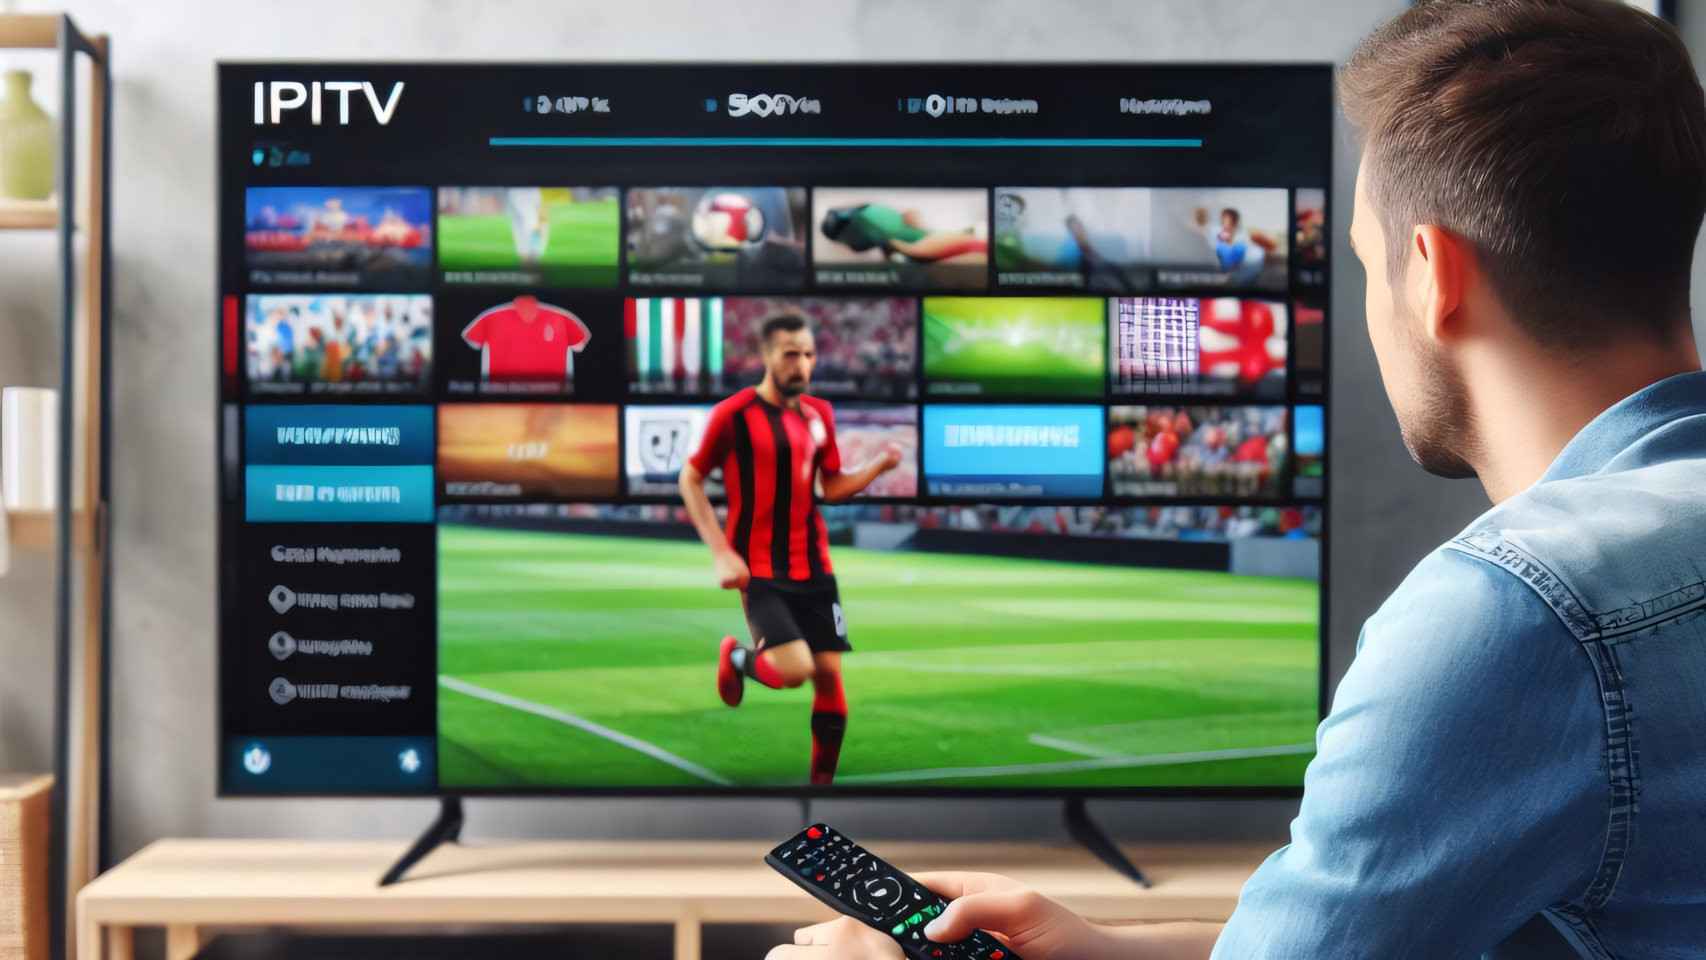 Que nos multen por usar una IPTV para ver fútbol puede ser legal